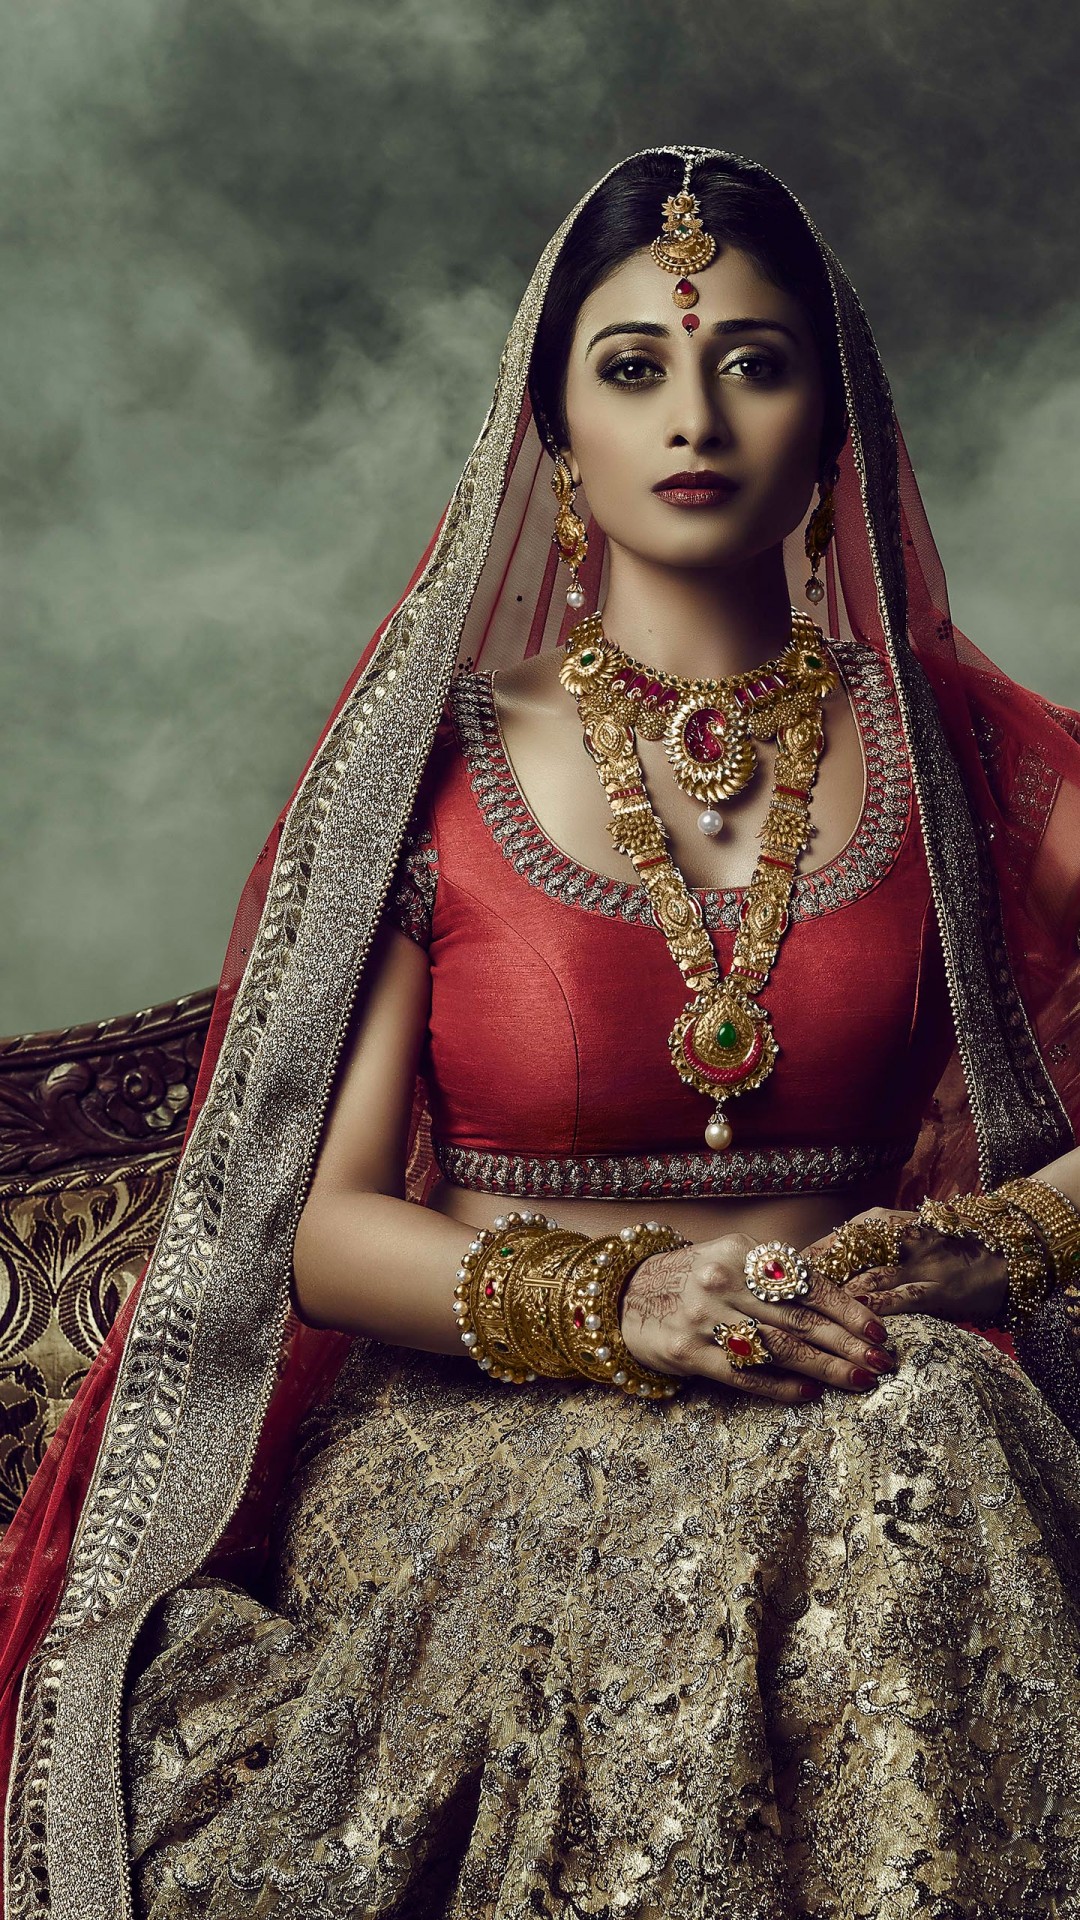 fond d'écran de mariage indien,la photographie,la mariée,portrait,oeuvre de cg,art